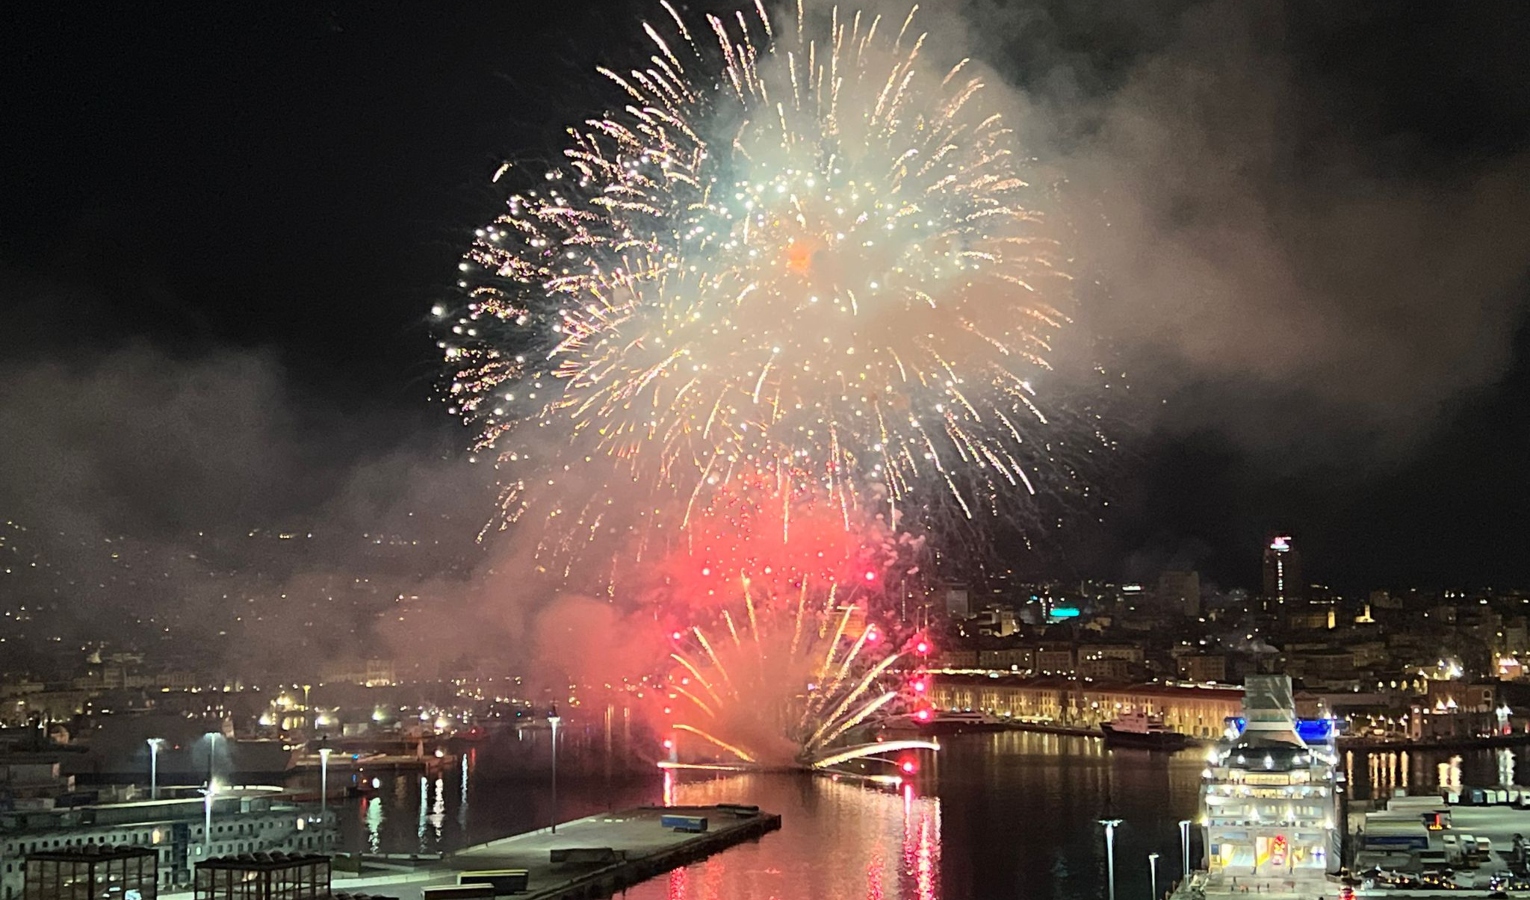 Nuova diga di Genova, festa al Porto Antico tra arte, musica e fuochi